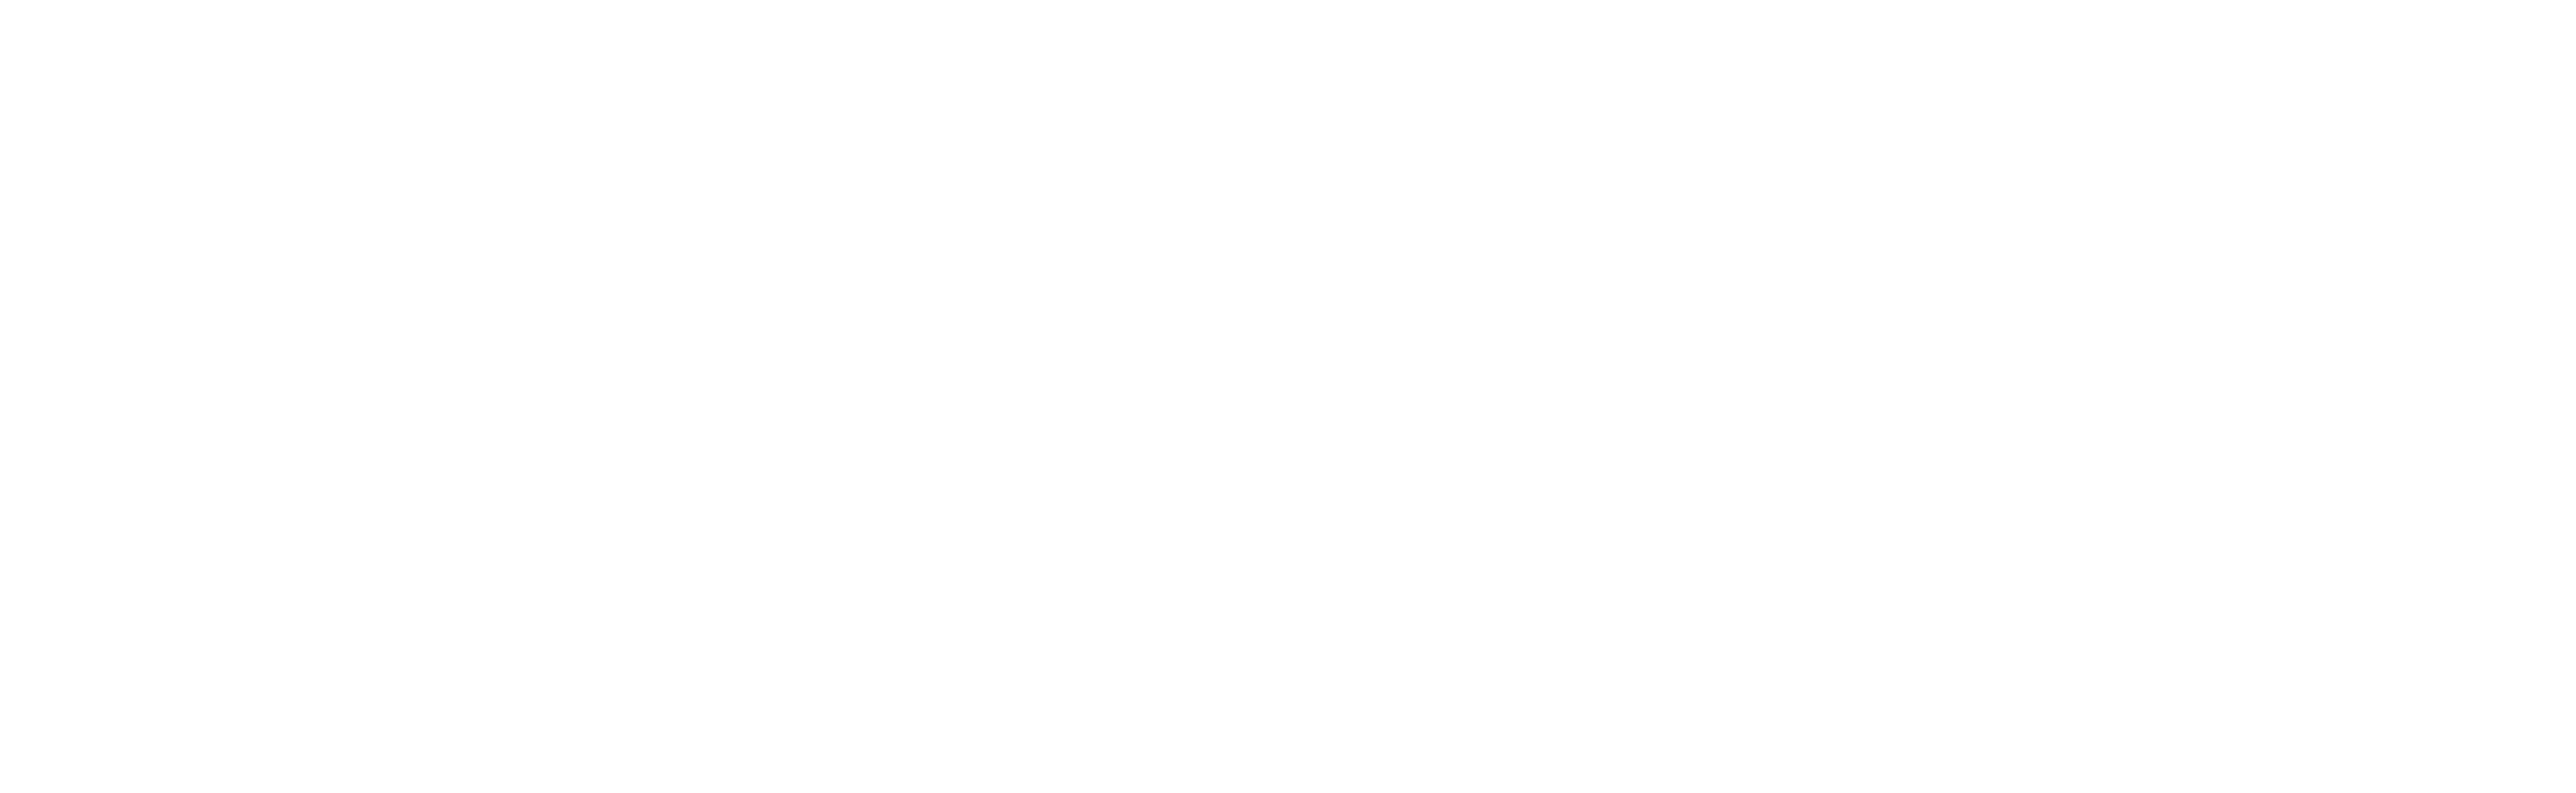 Musicgbm.com will inspire you!